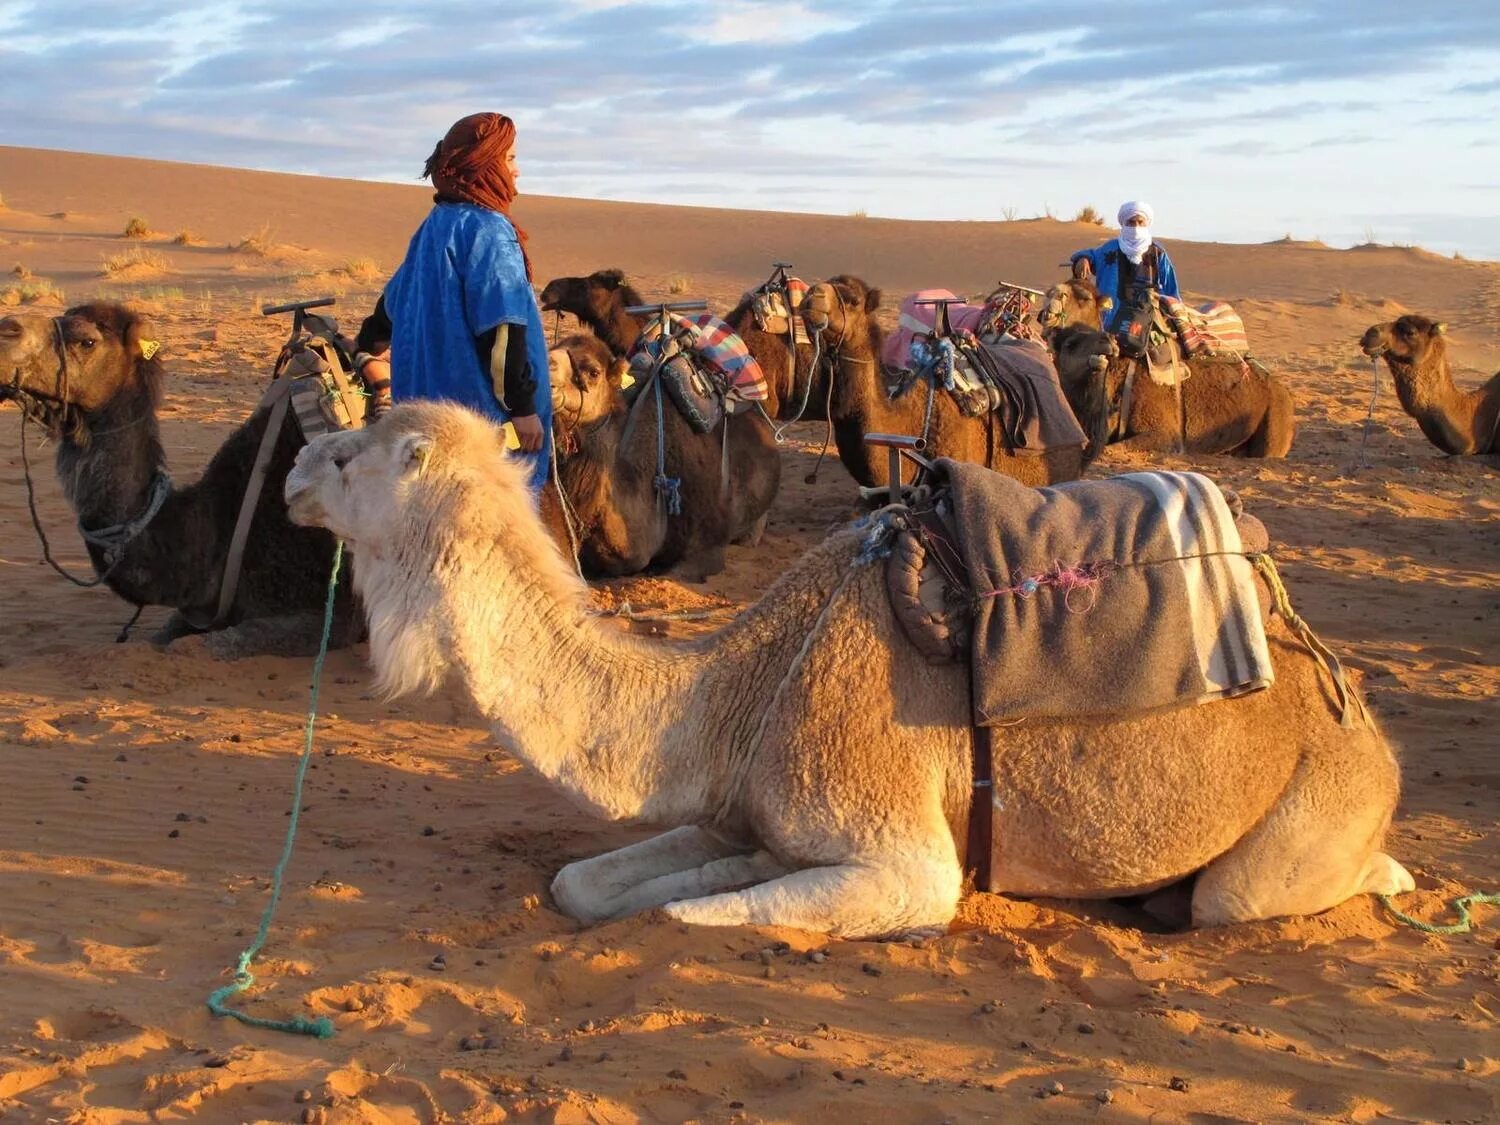 Покажи караван. Бедуины Марокко. Караван в пустыне Каракум. Караваны верблюдов с бедуинами. Караван марокканских верблюдов дромедаров.